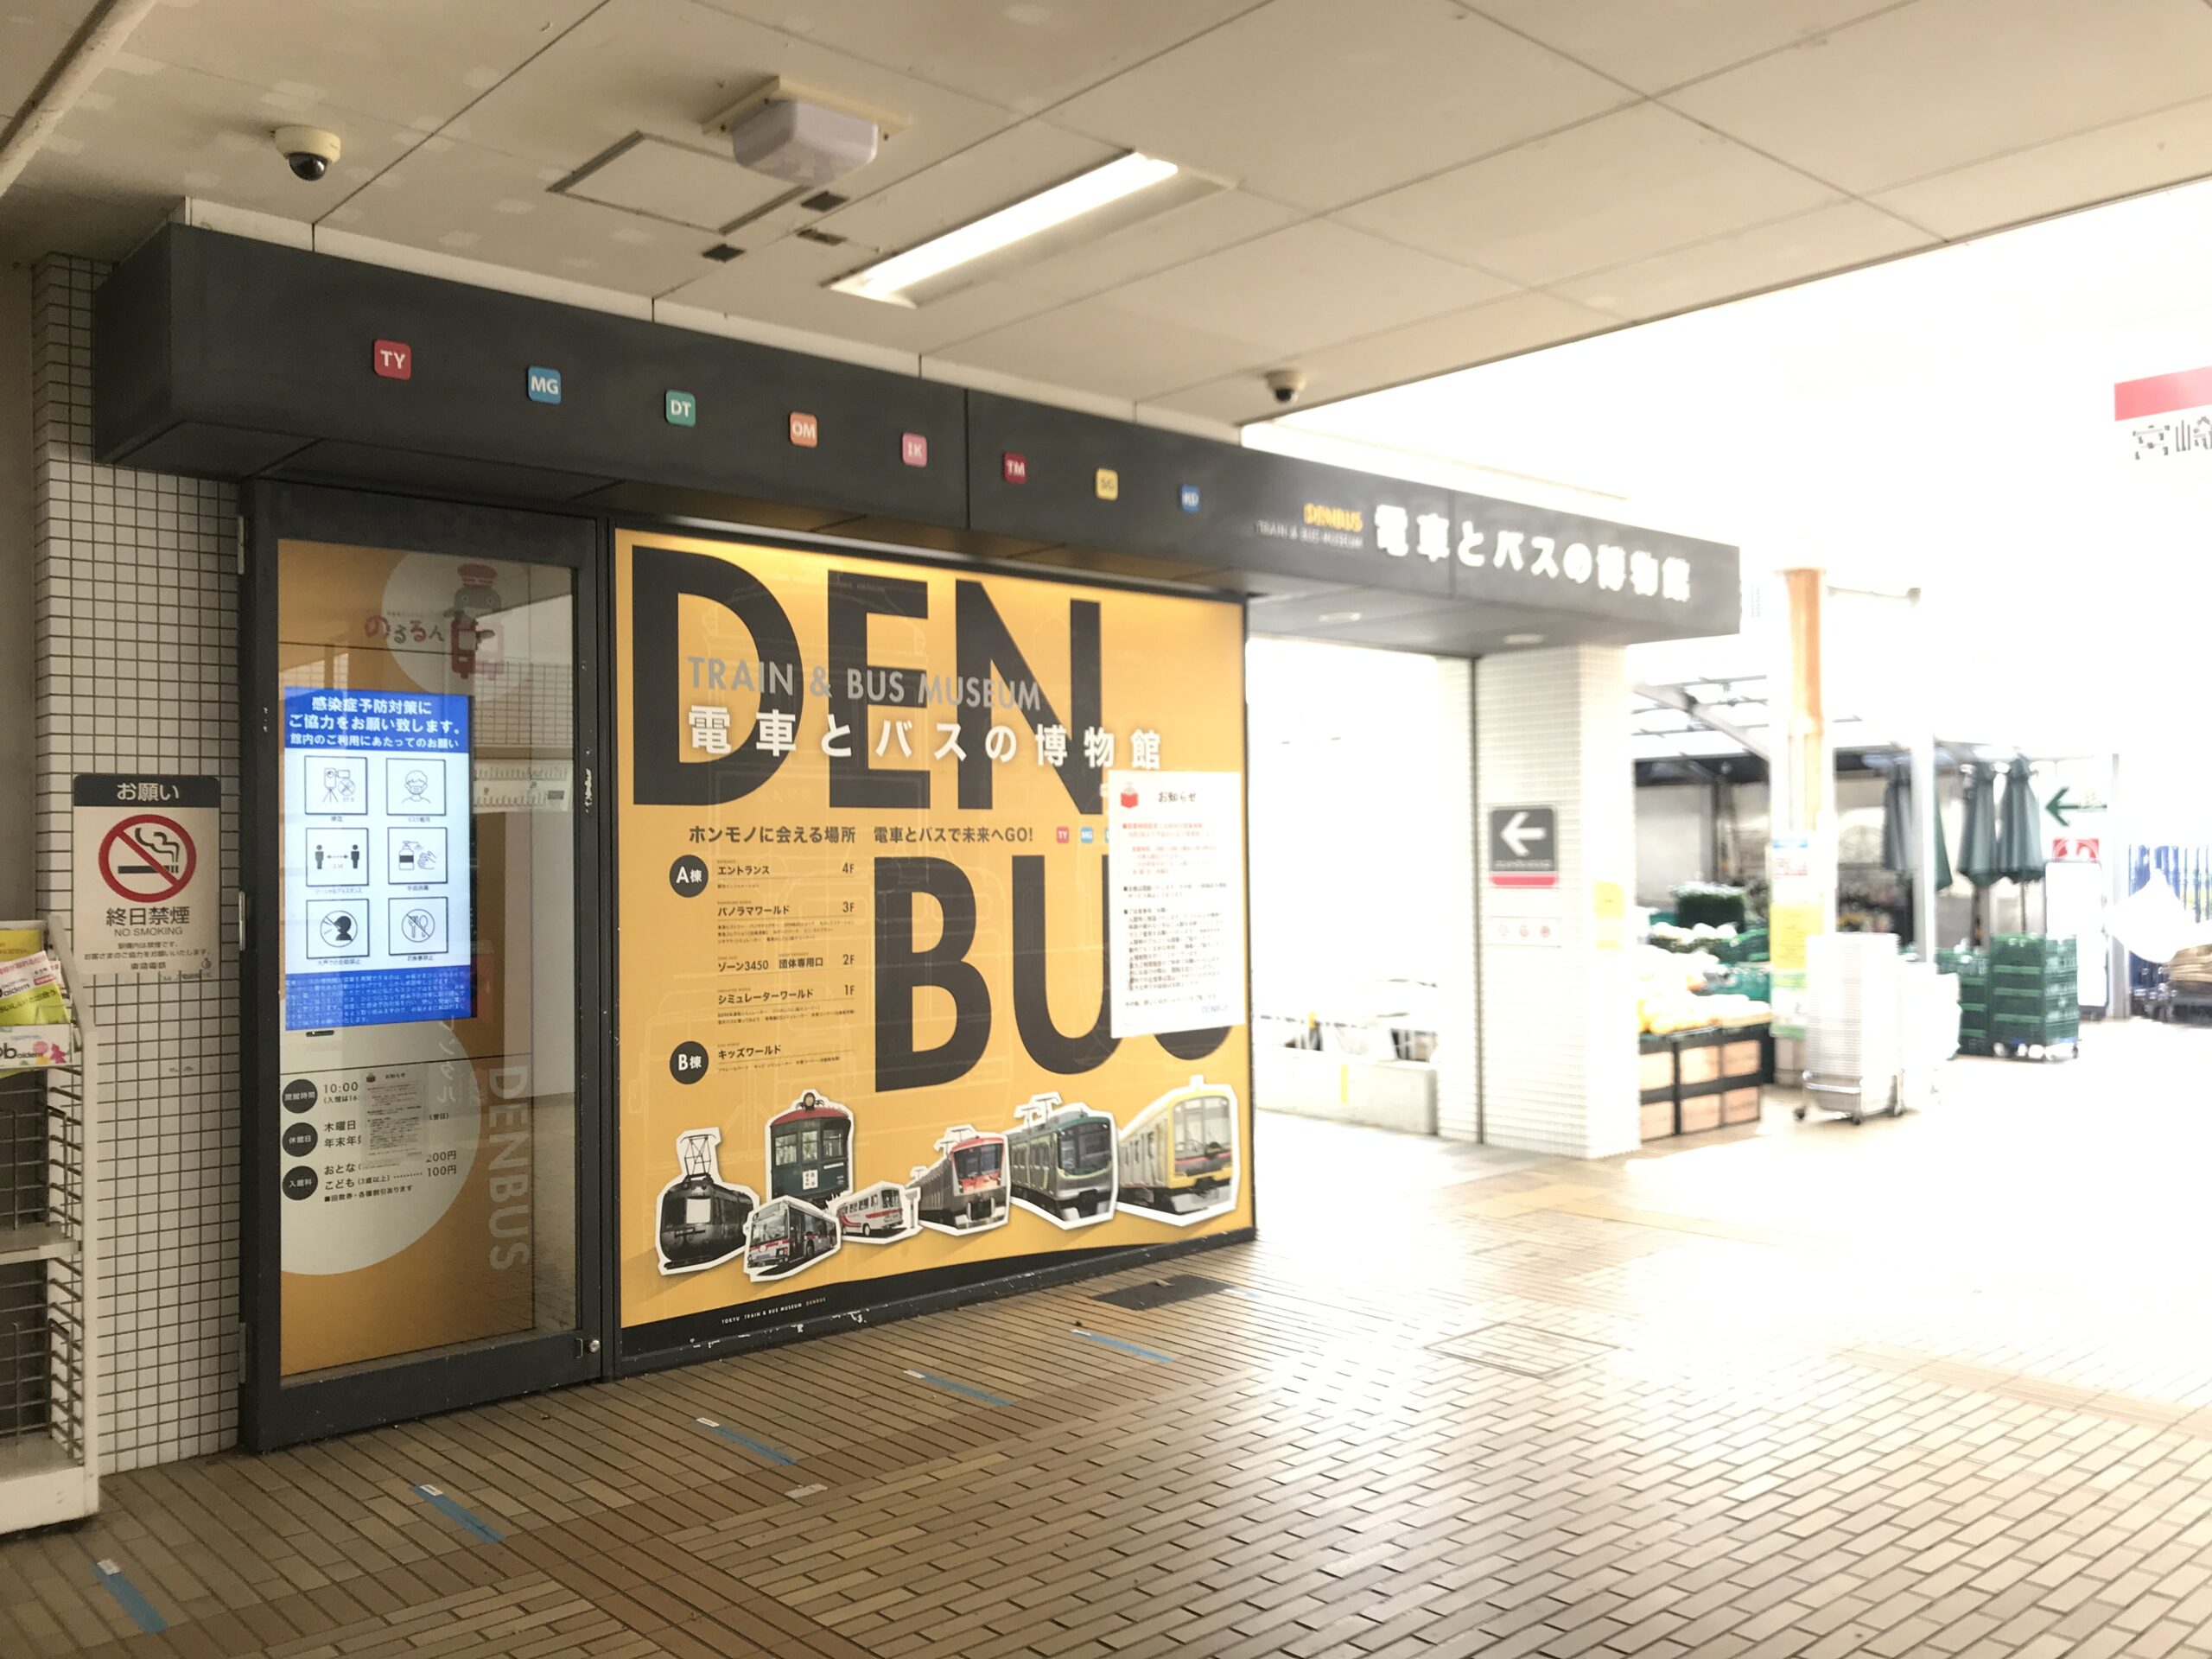 DT12_電車とバスの博物館入口コンコース